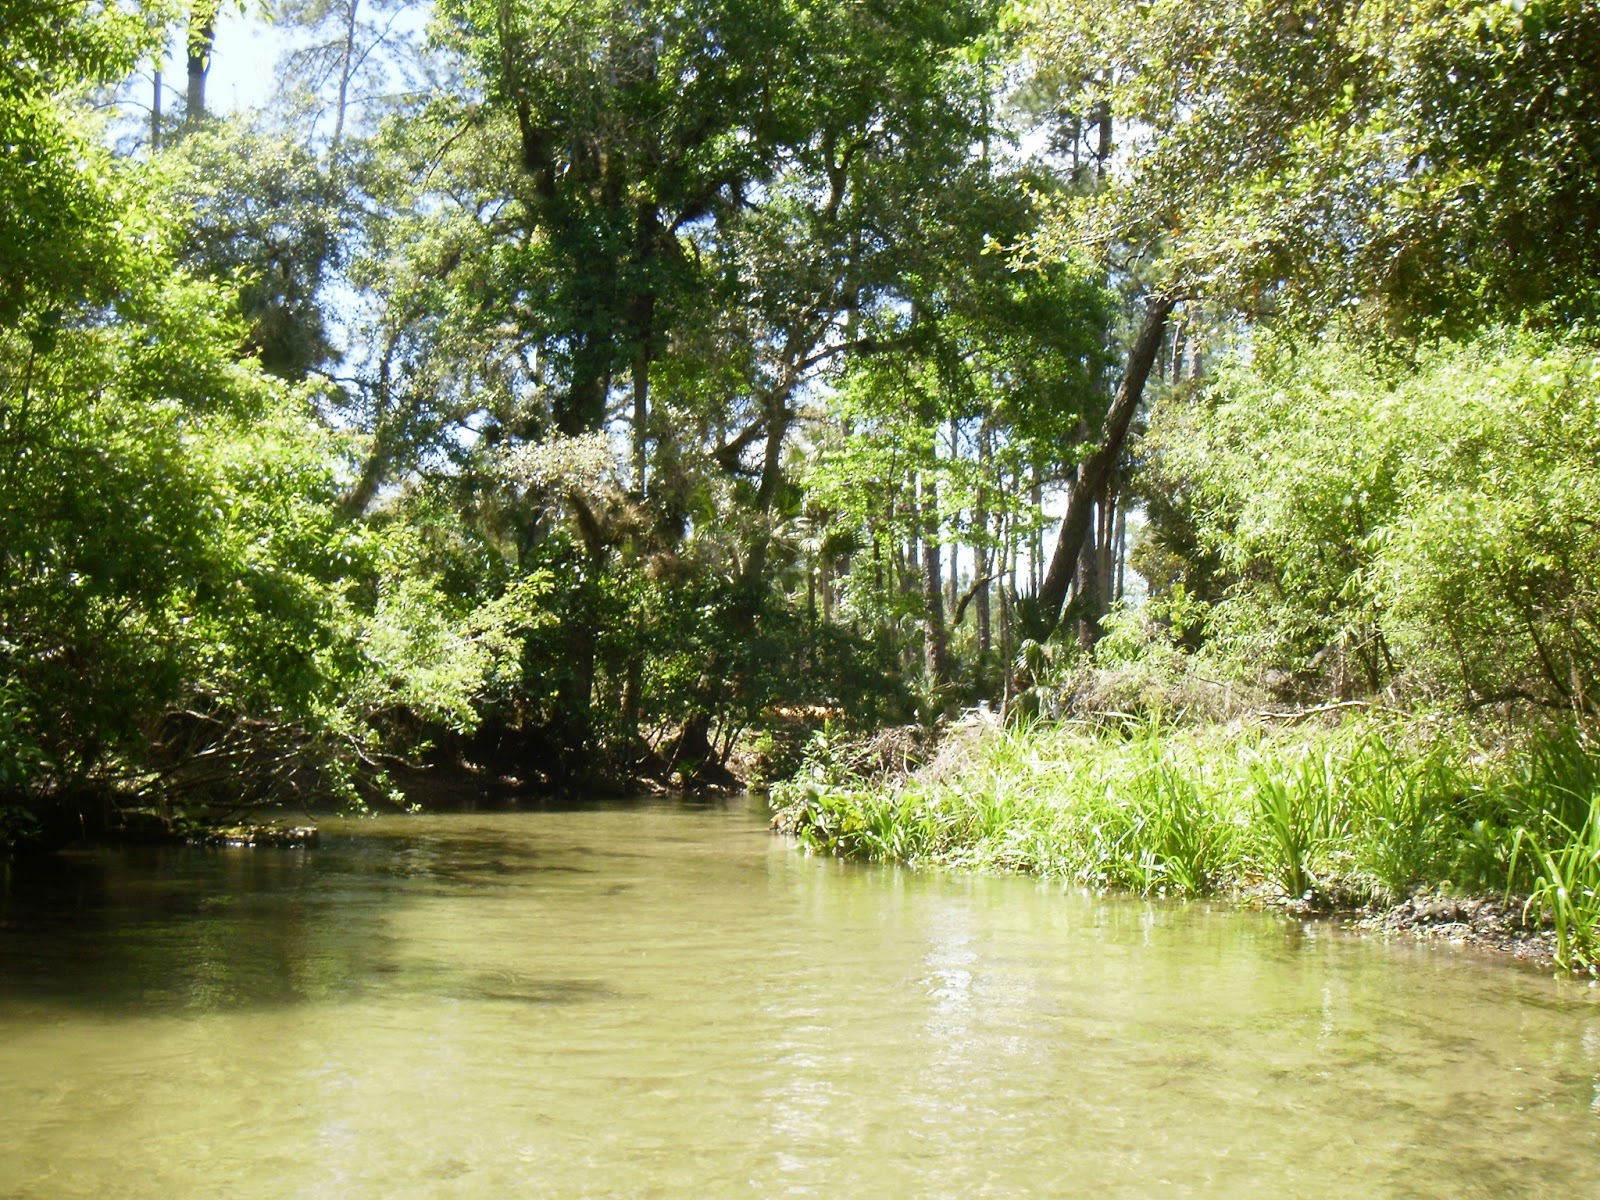 Kayaking Wekiva River &amp; Rock Springs Run with Gators 